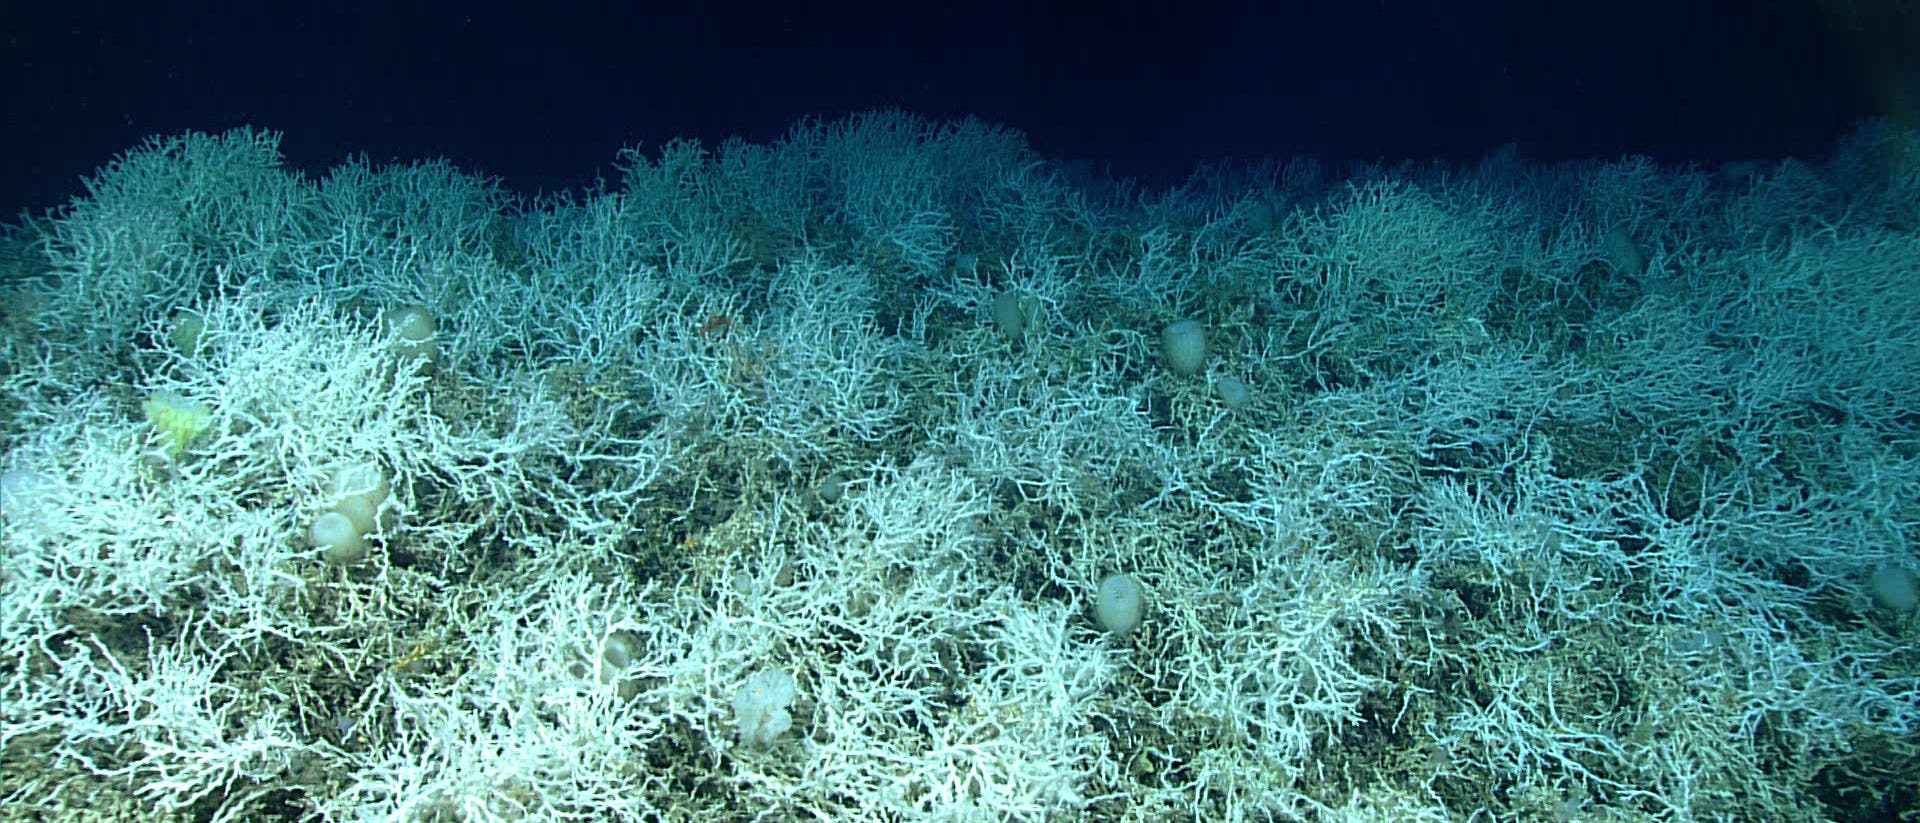 Mar profundo: se ha descubierto un enorme arrecife de coral de agua fría en un lugar inesperado